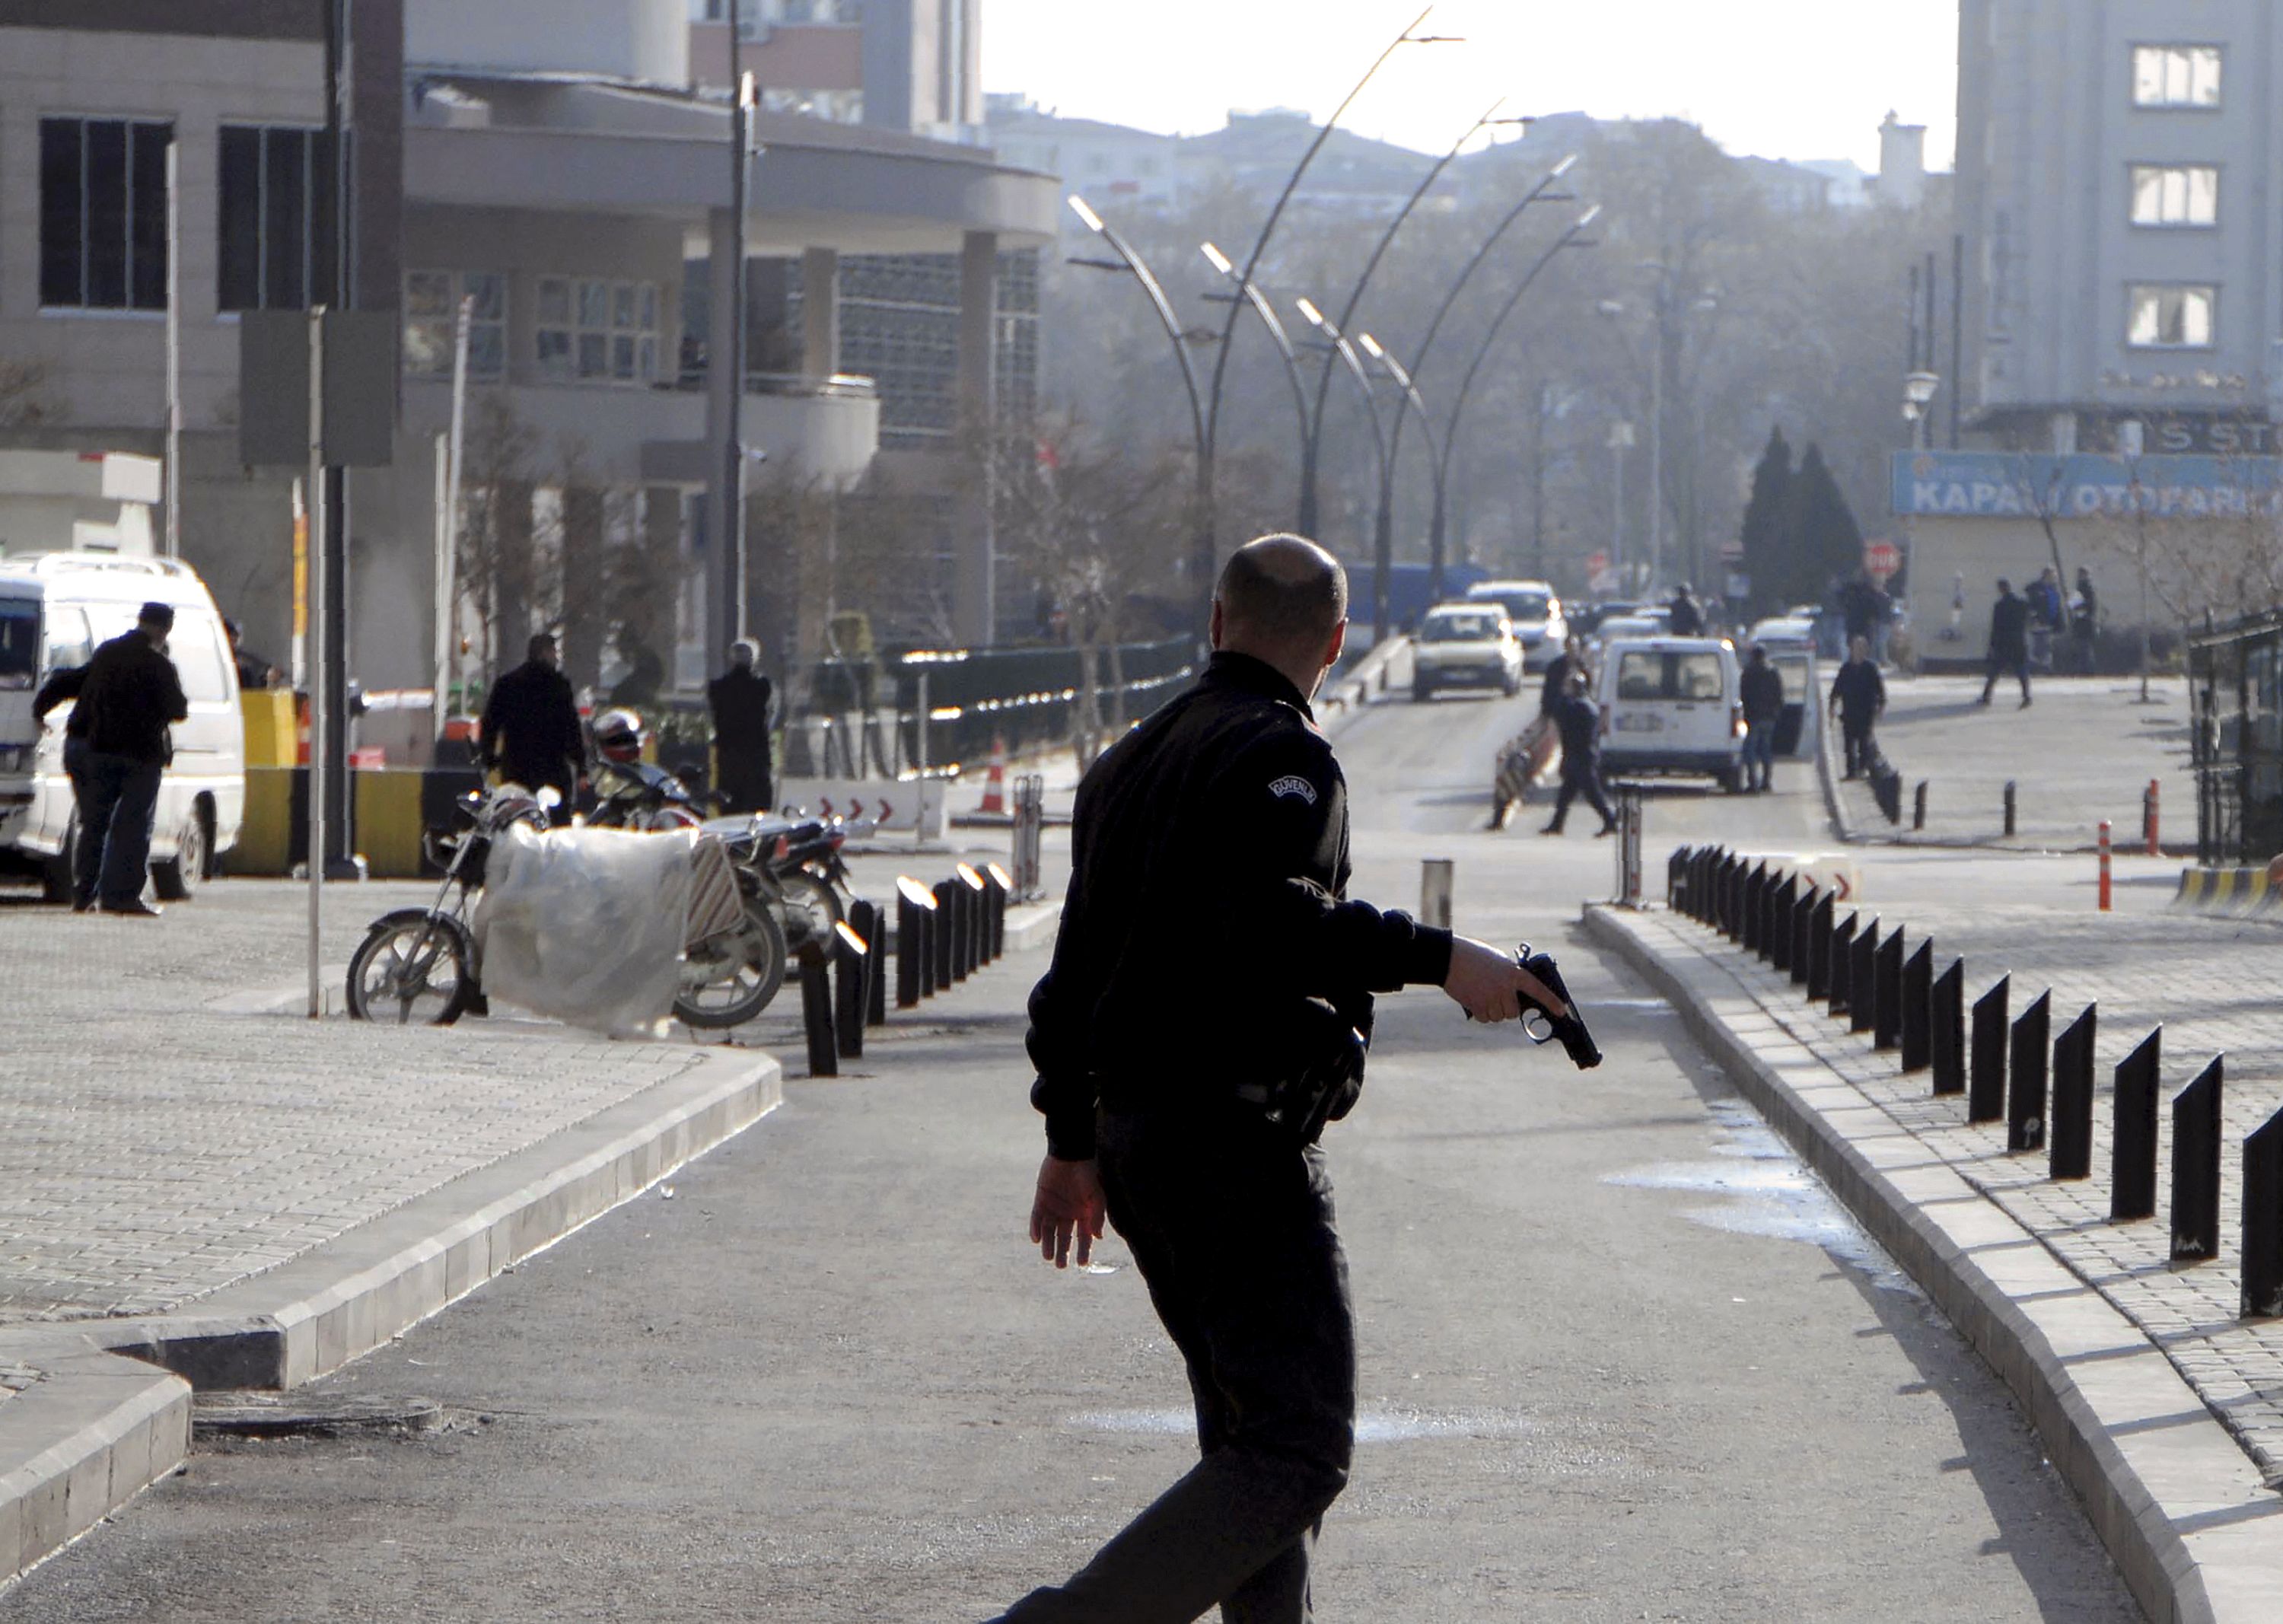 Angreifer vor Polizeihauptquartier in der Türkei getötet